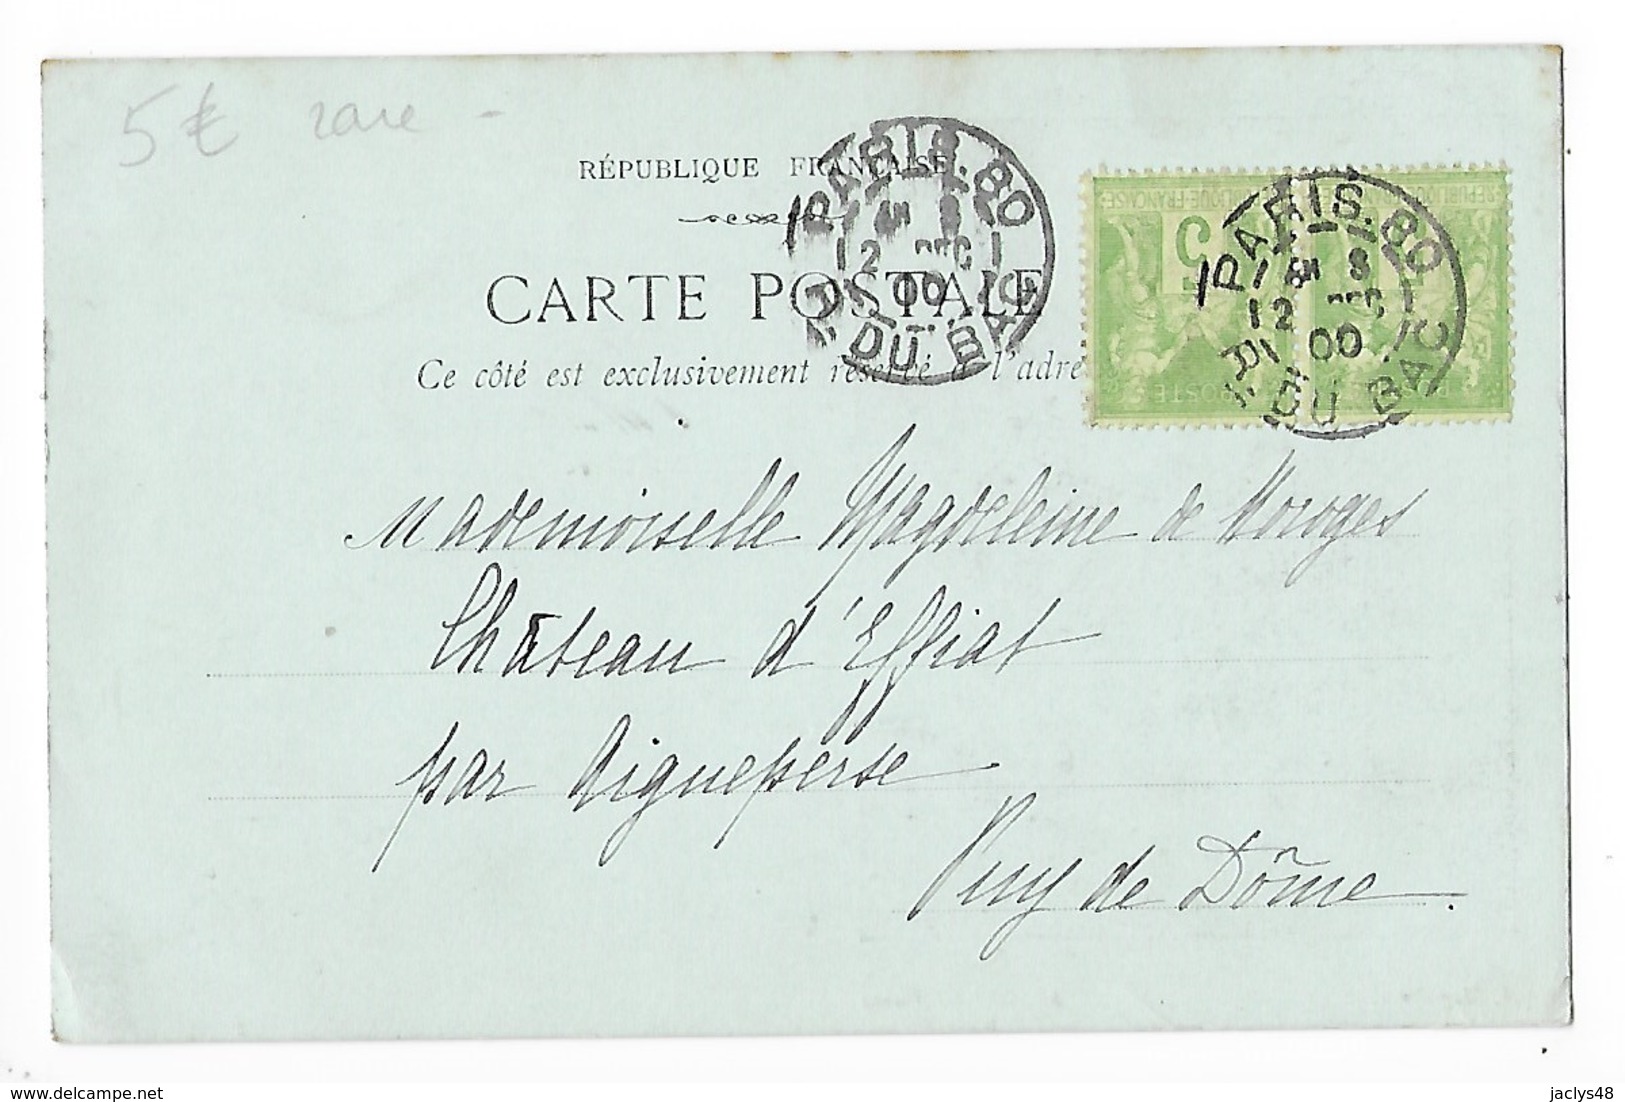 HONNEUR AU PRESIDENT KRÜGER Carte Pionniére Fond Vert Année 1900   -  F 1 - People